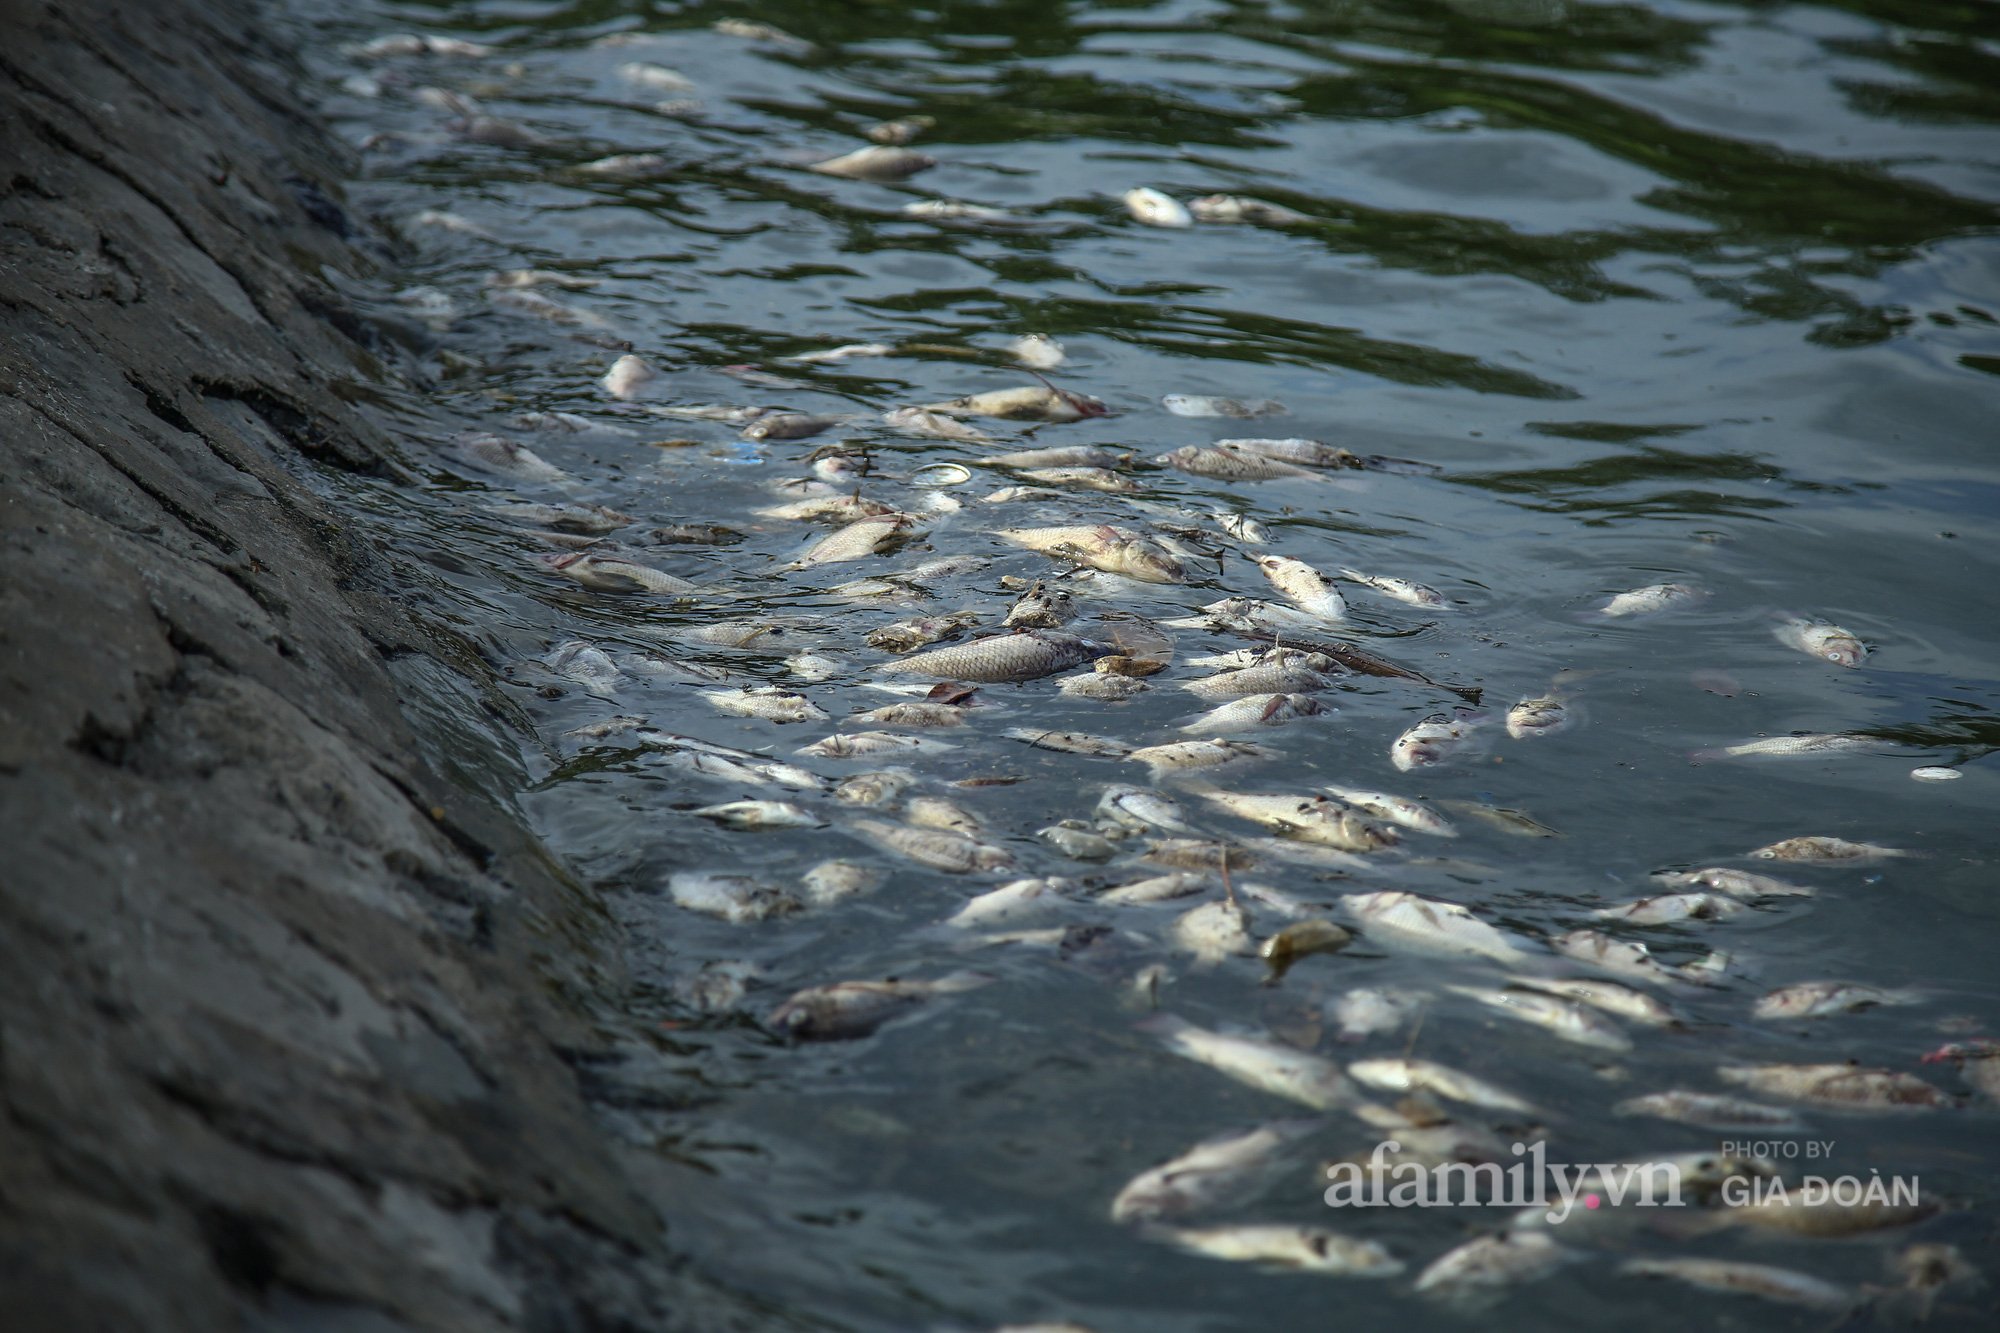 Cá chết nổi trắng góc hồ Yên Sở, người dân ngao ngán mỗi khi đi qua - Ảnh 10.